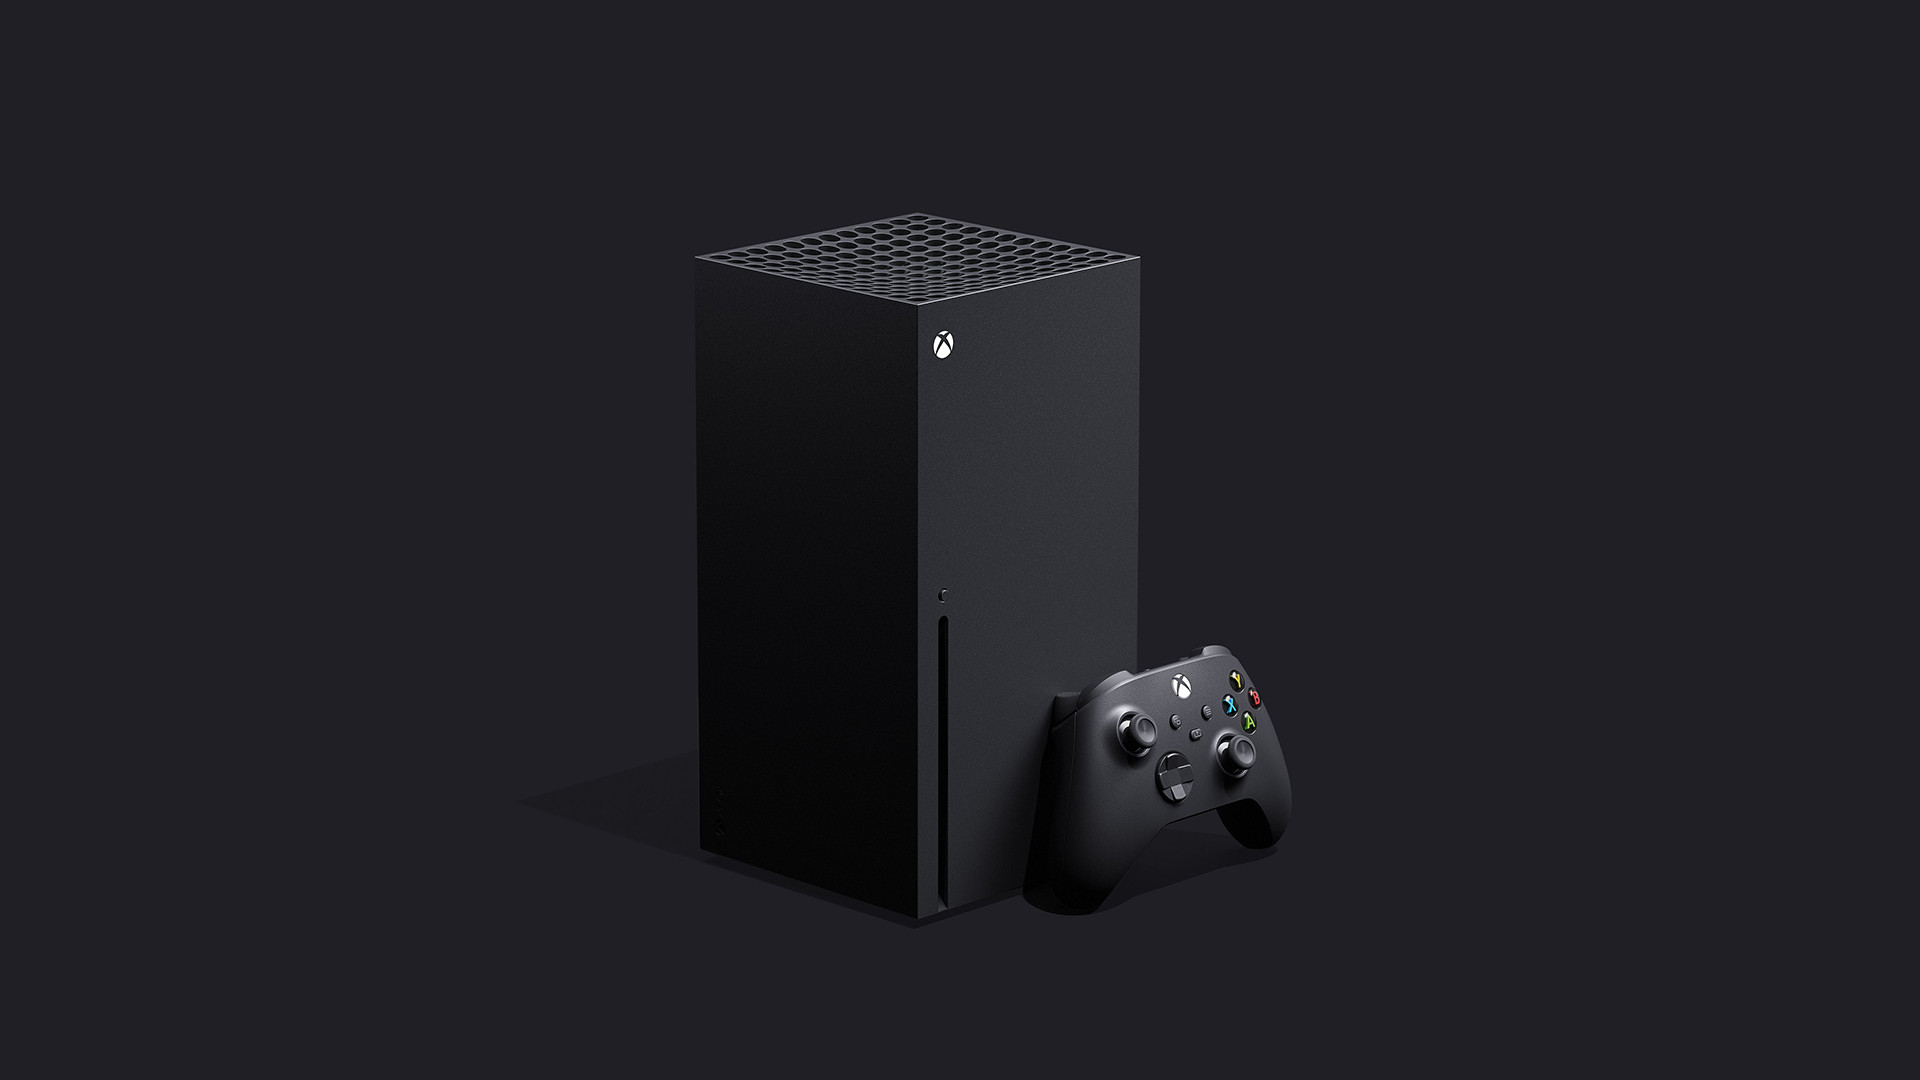 Xbox Series X coming November 10 at $499